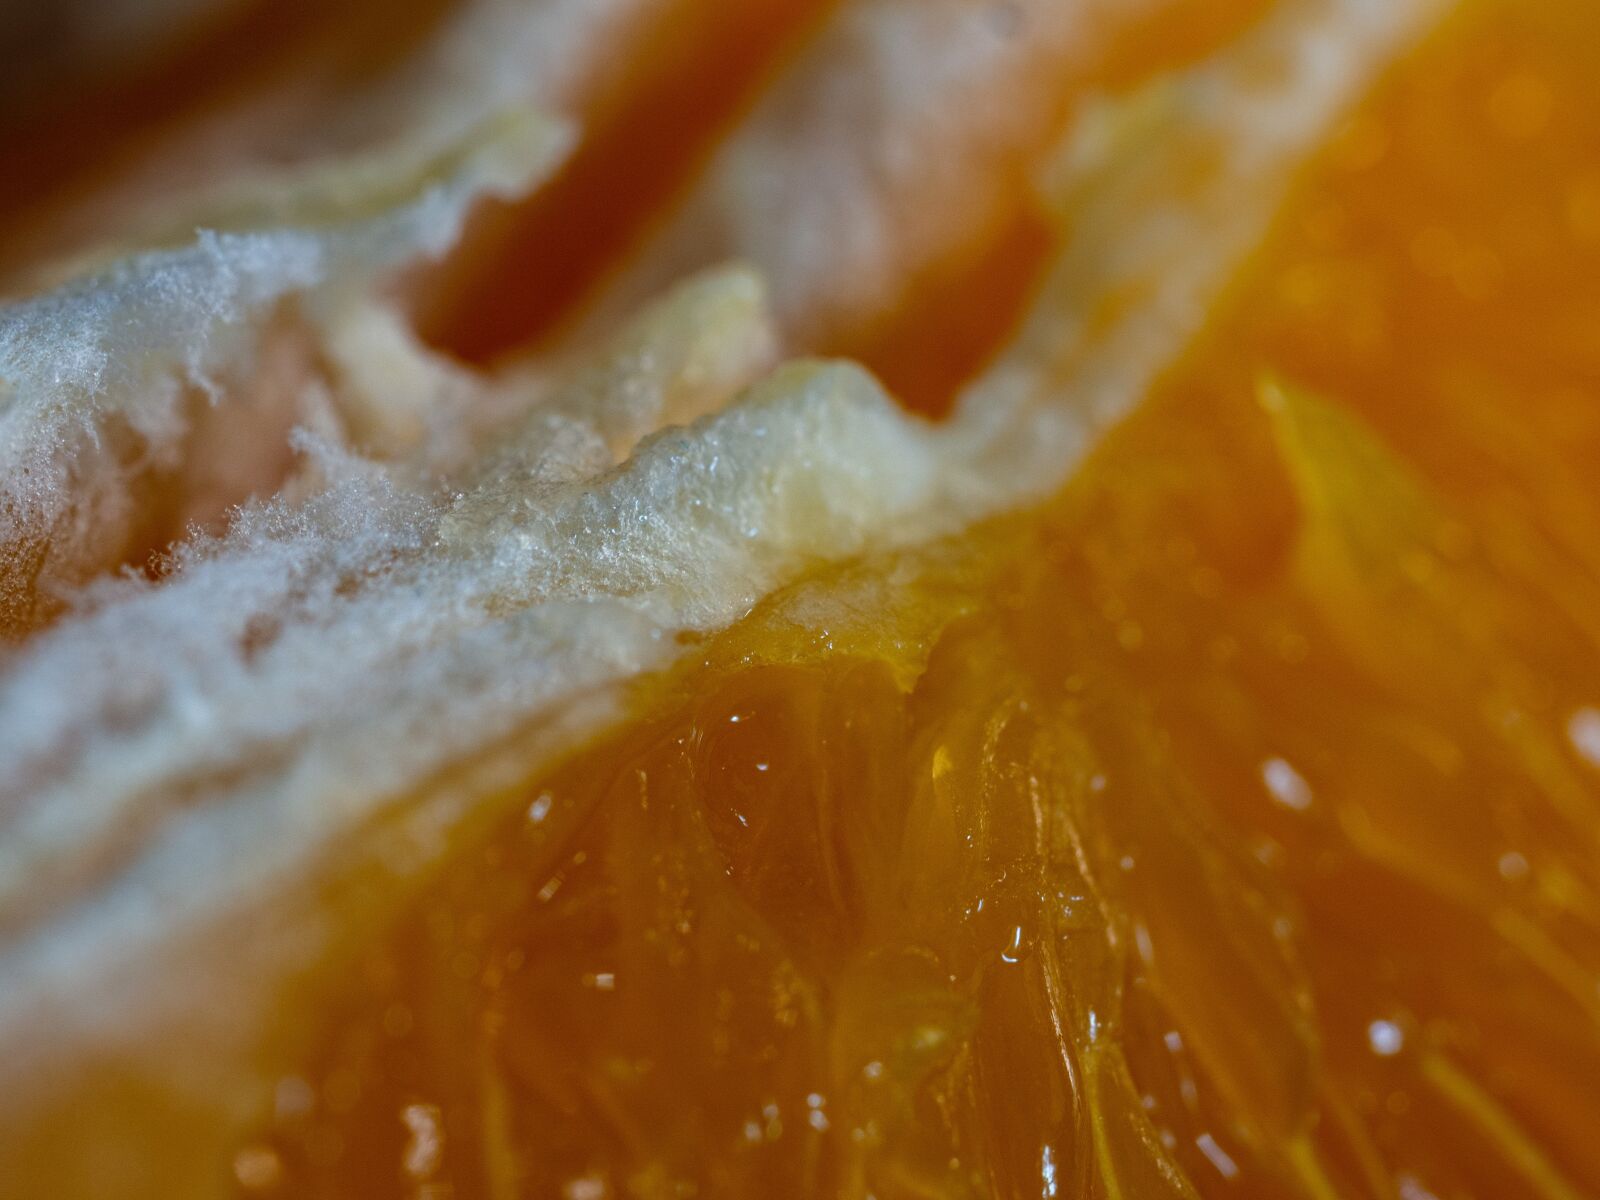 OLYMPUS 35mm Lens sample photo. The flesh, fruit, orange photography